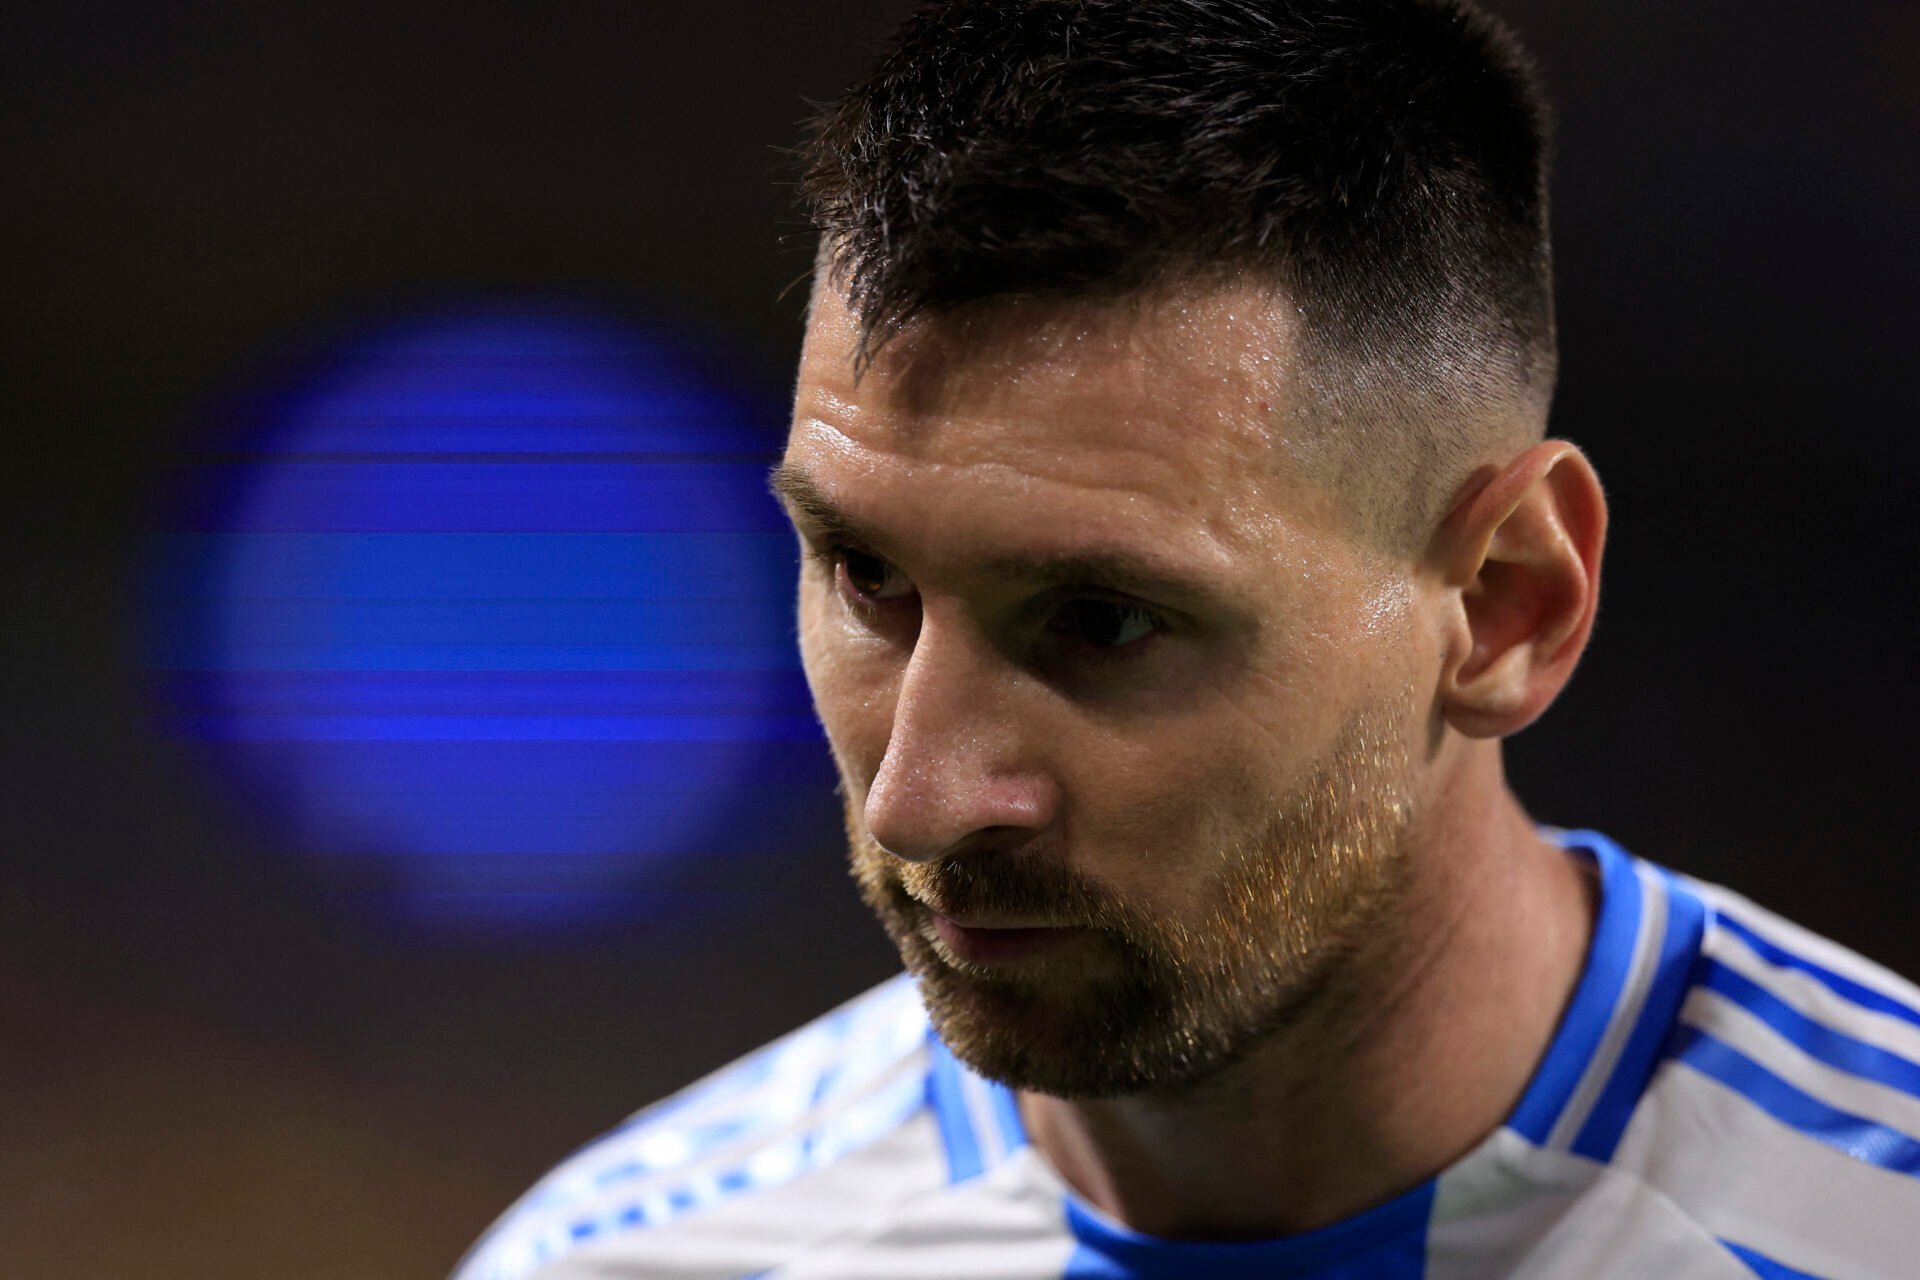 66 minutos e um choro comovente: como foi a ‘despedida’ de Messi